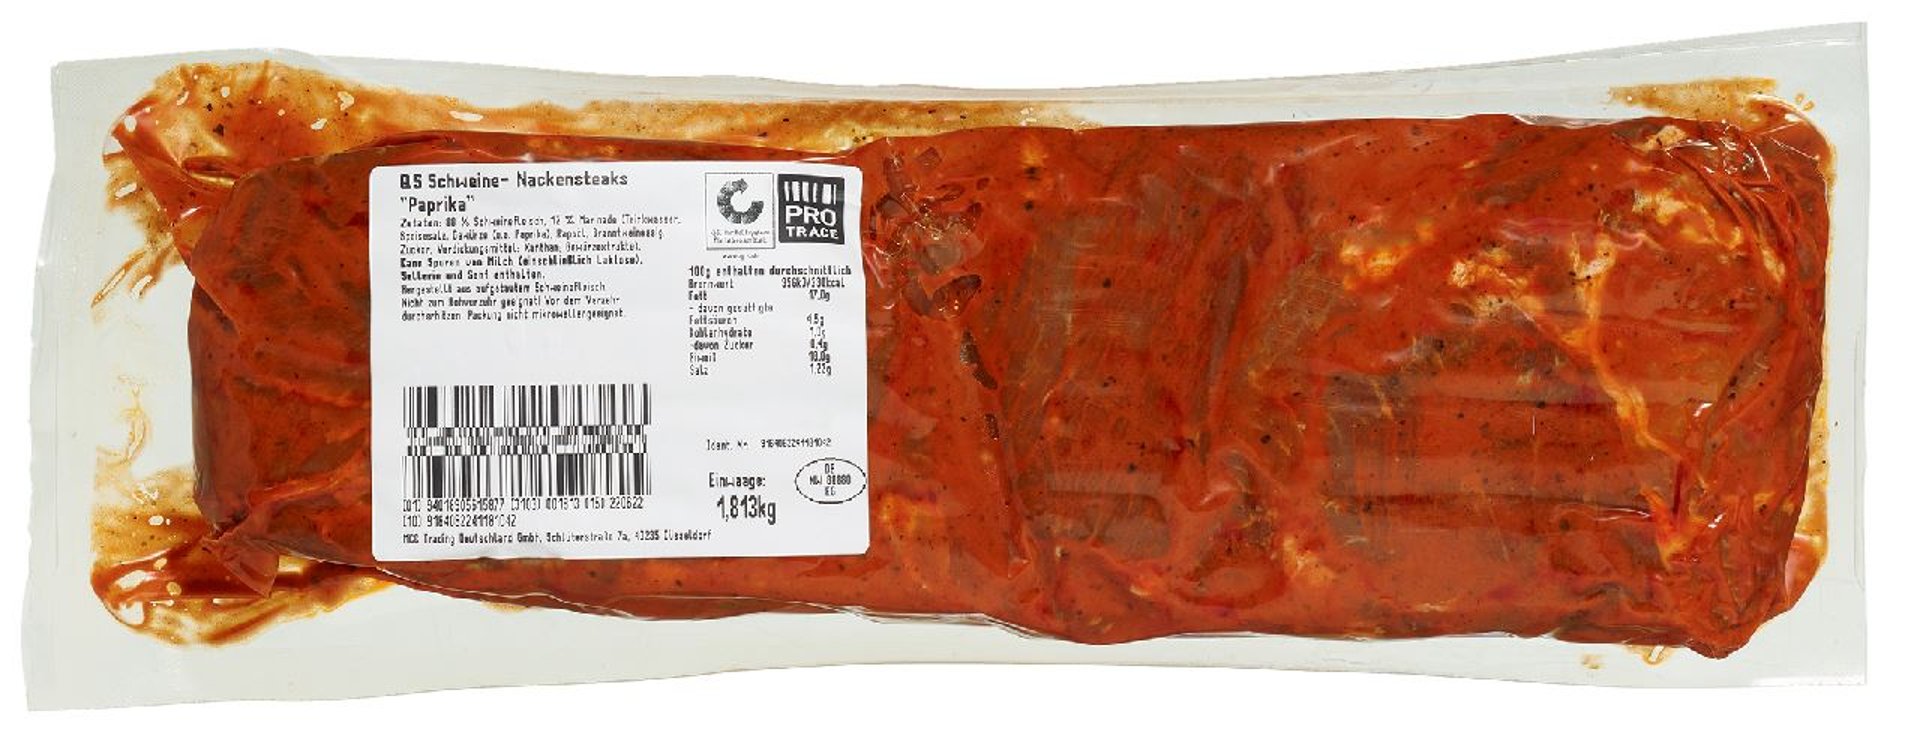 METRO Chef - QS Schweine-Nackensteaks mariniert 10 Stück vak.-verpackt - ca. 1,7 kg